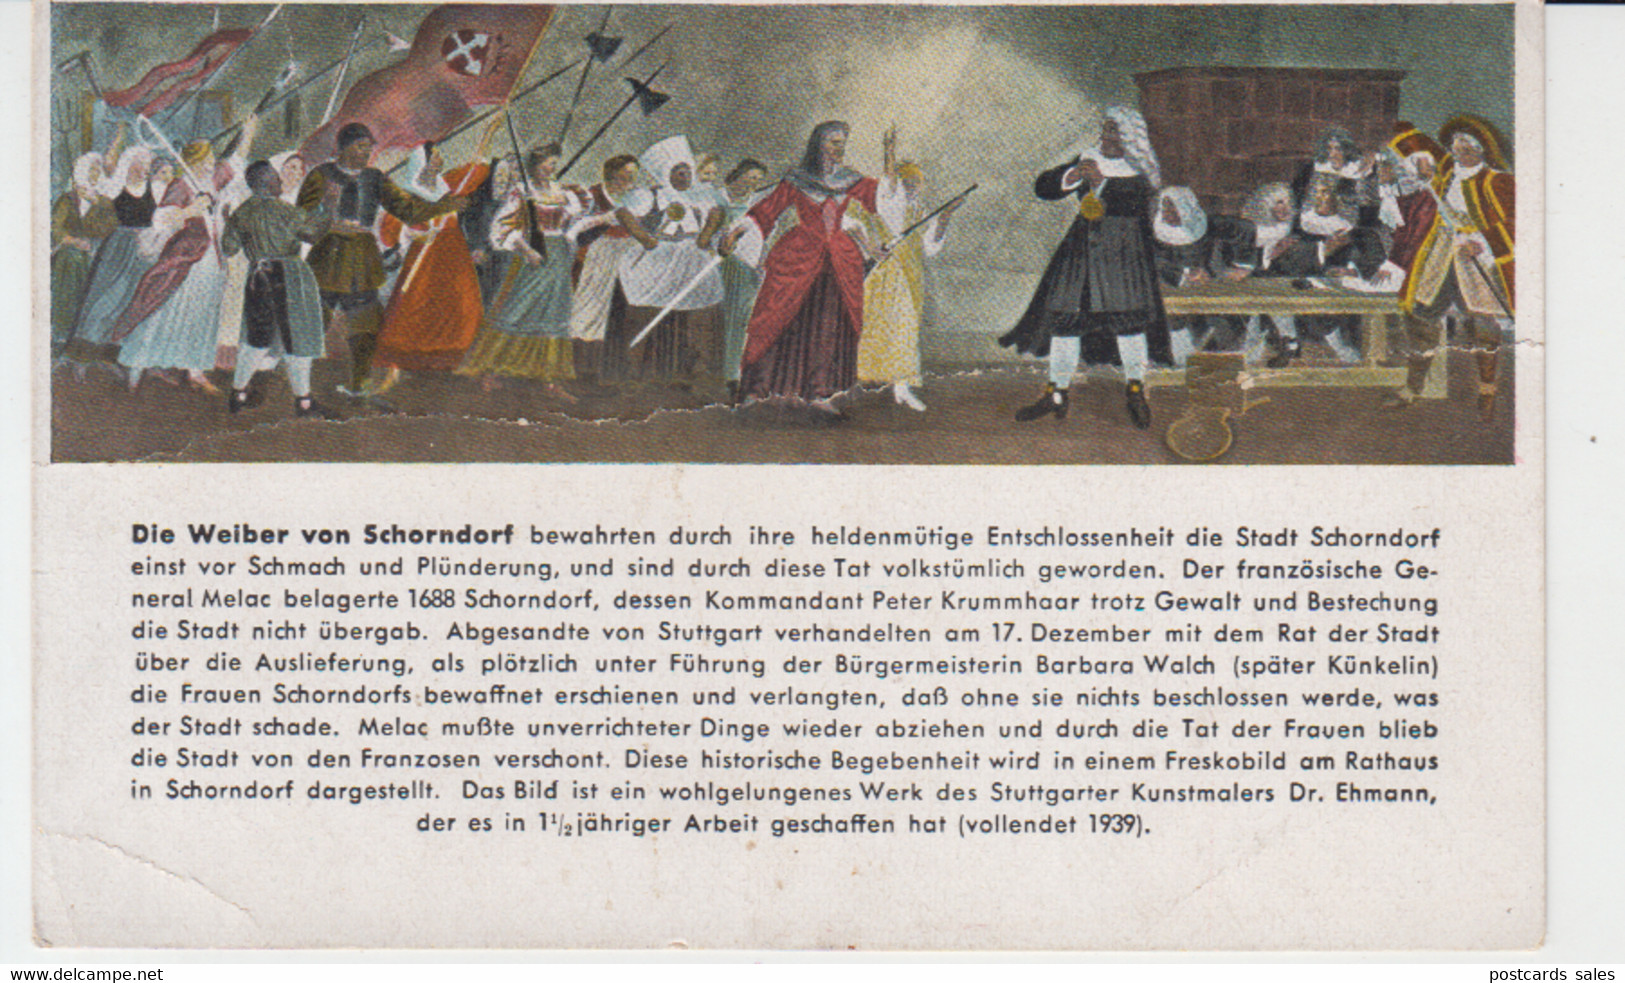 Deutschland - Schorndorf - Die Weiber Von Schorndorf - 1688 - General Melac - Painting Fresco Kunstler - Schorndorf